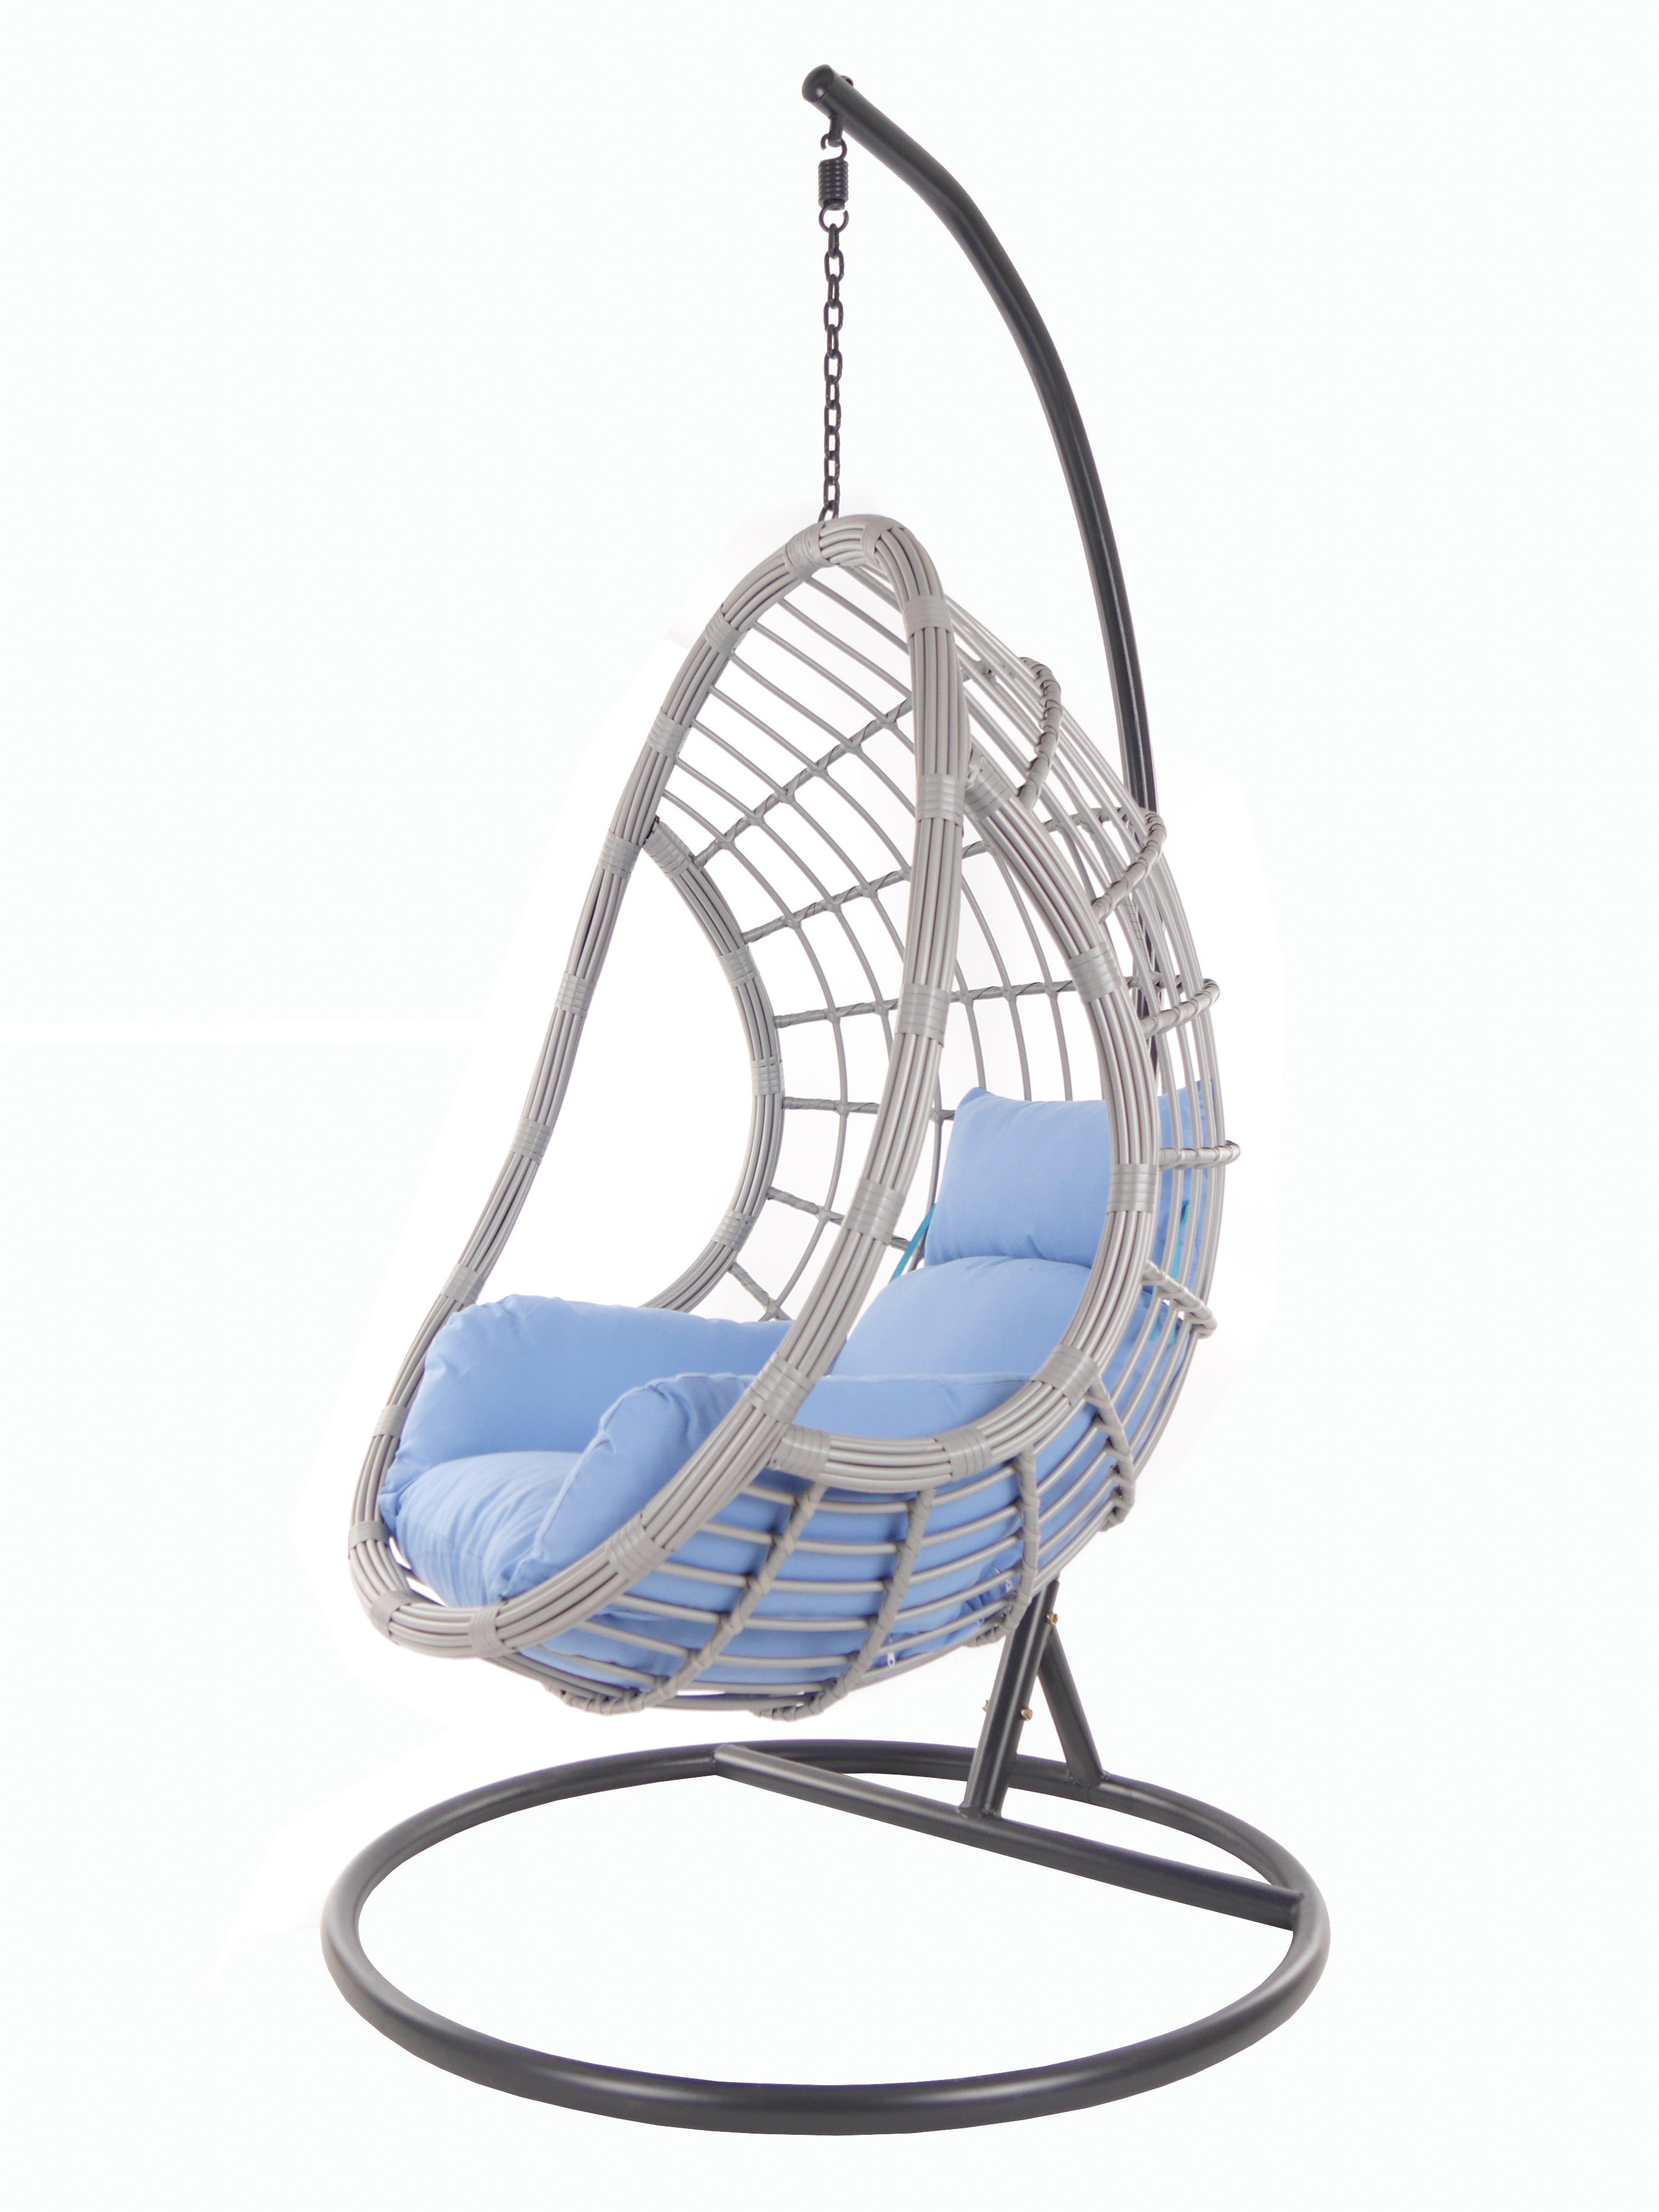 KIDEO Hängesessel PALMANOVA lightgrey, Schwebesessel königsblau Loungemöbel Swing blue) Chair, (3070 Gestell mit royal und Kissen